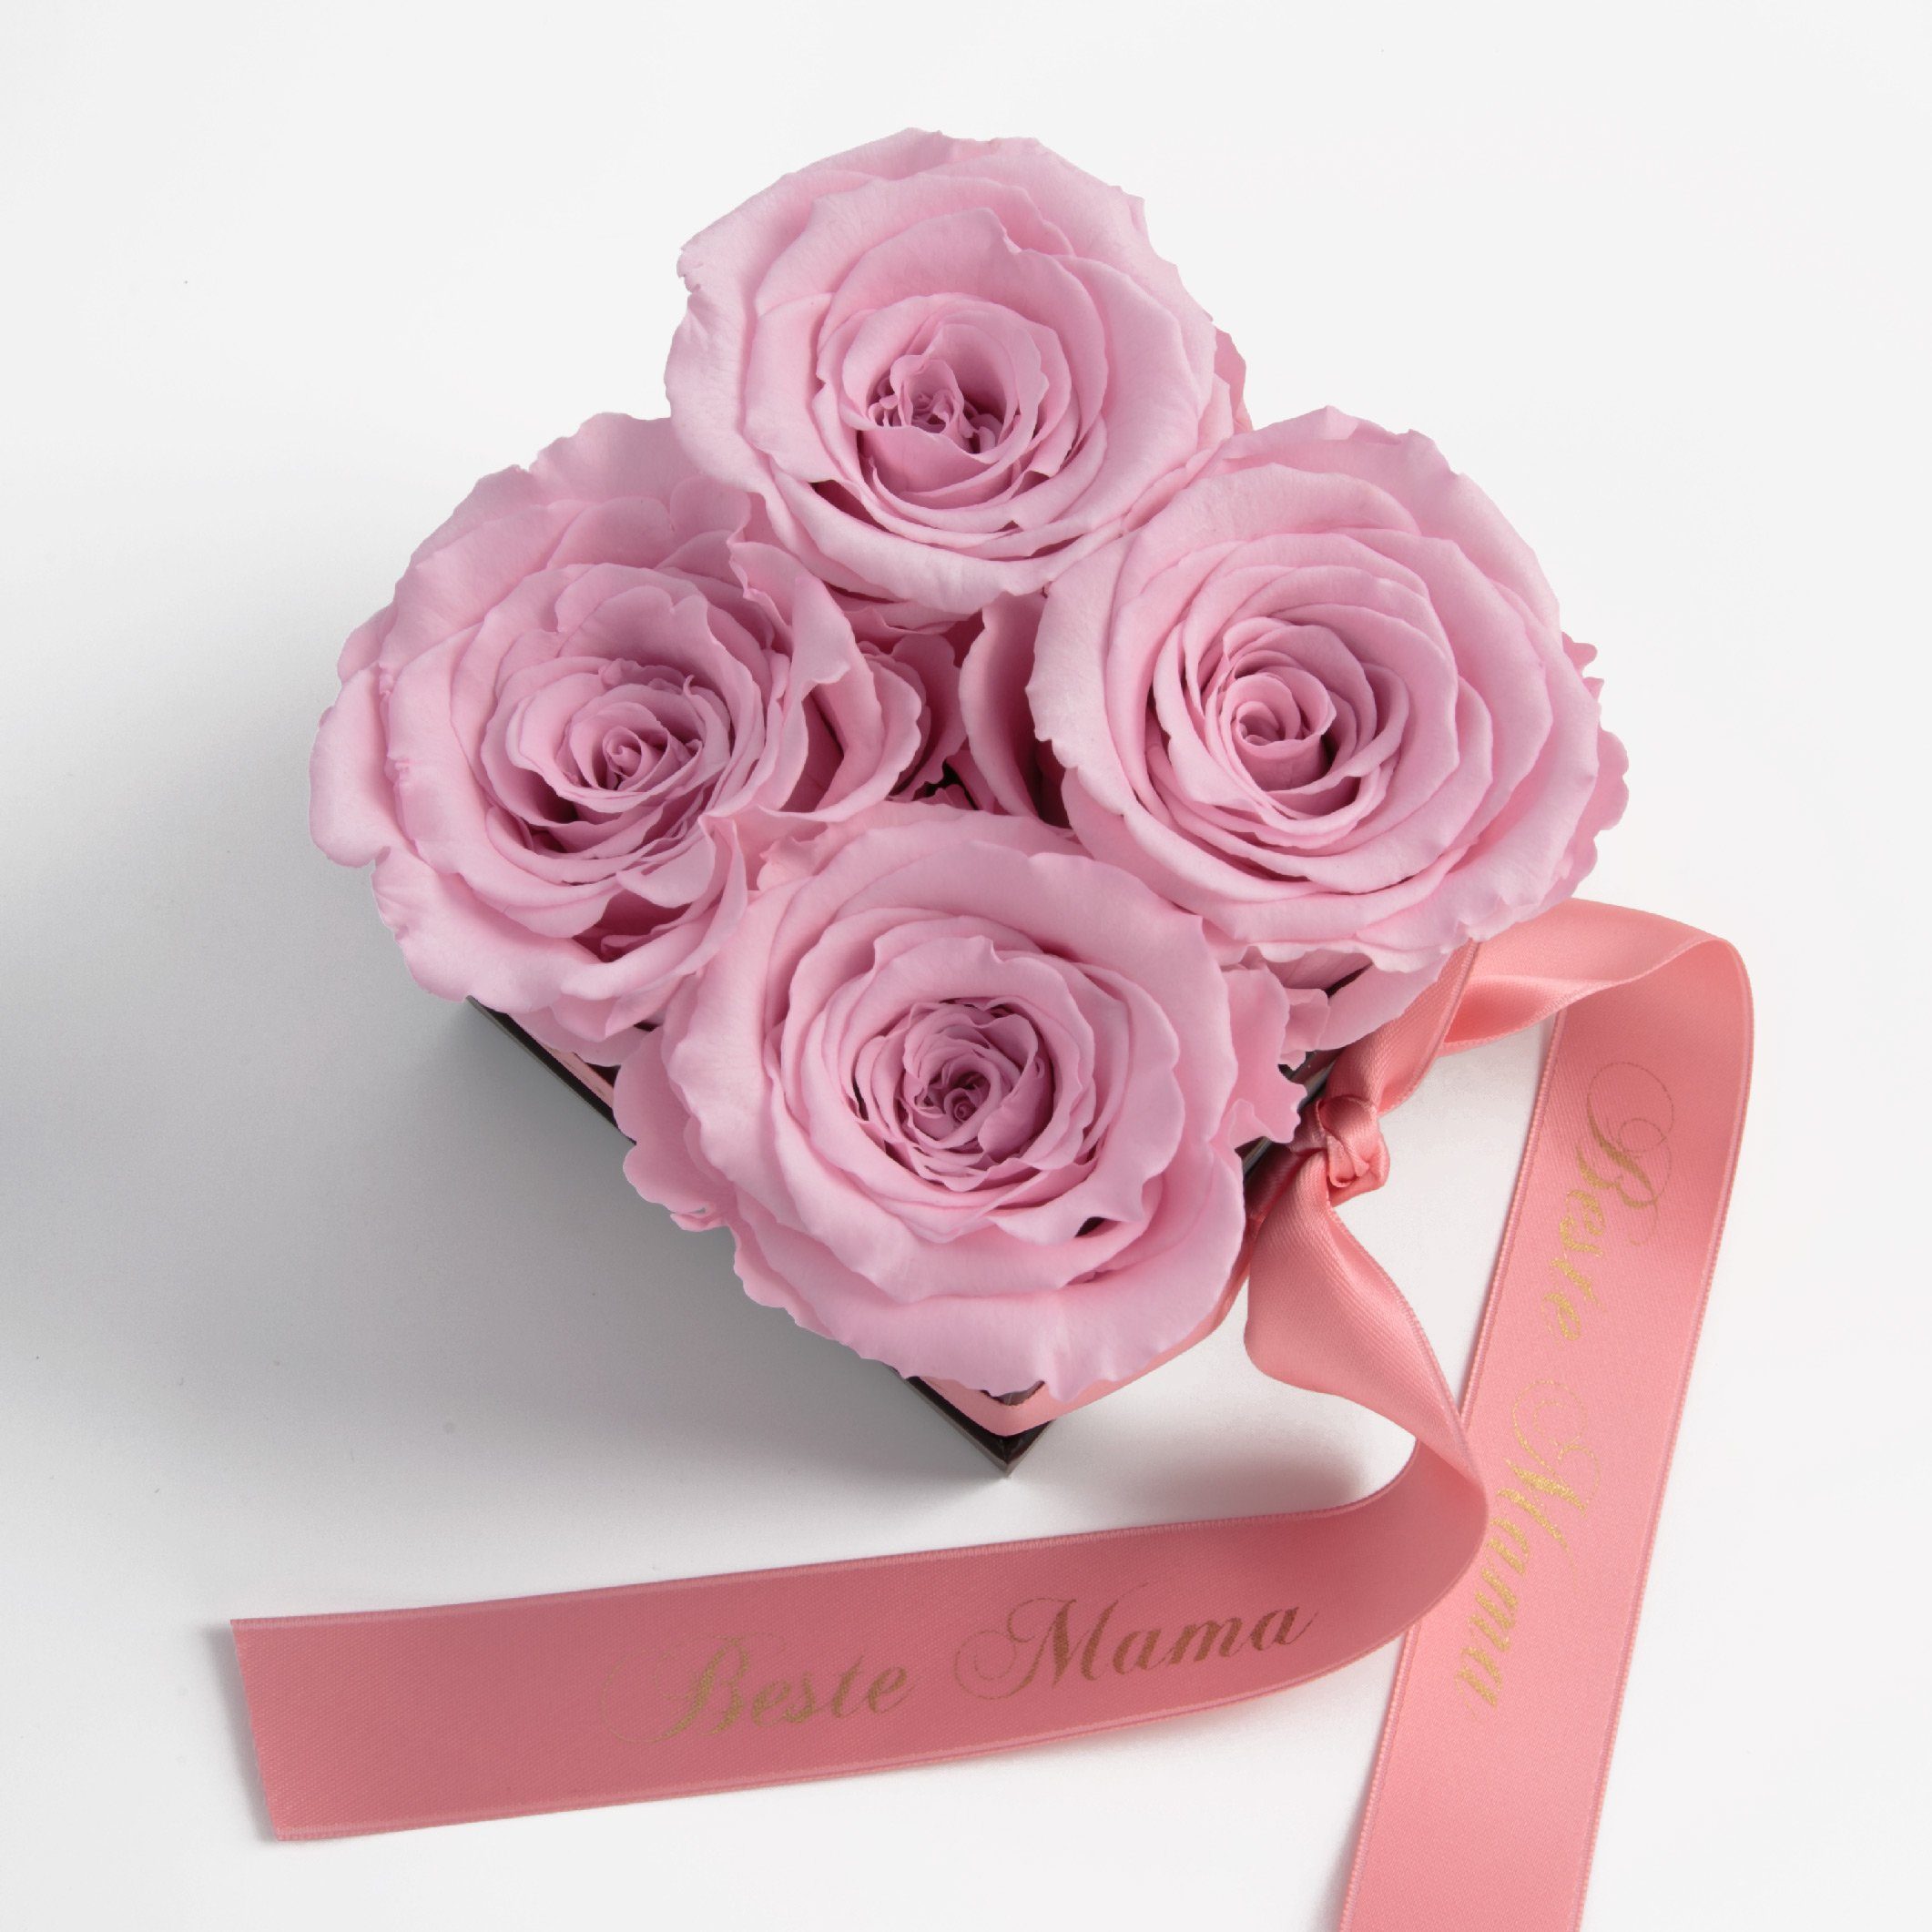 Heidelberg, ROSEMARIE 8,5 cm, Beste Infinity mit Rosen 3 Rosa konservierte echte Jahre Mama haltbar SCHULZ Duft Rosenbox Rose, Blumen Kunstblume zu bis Höhe